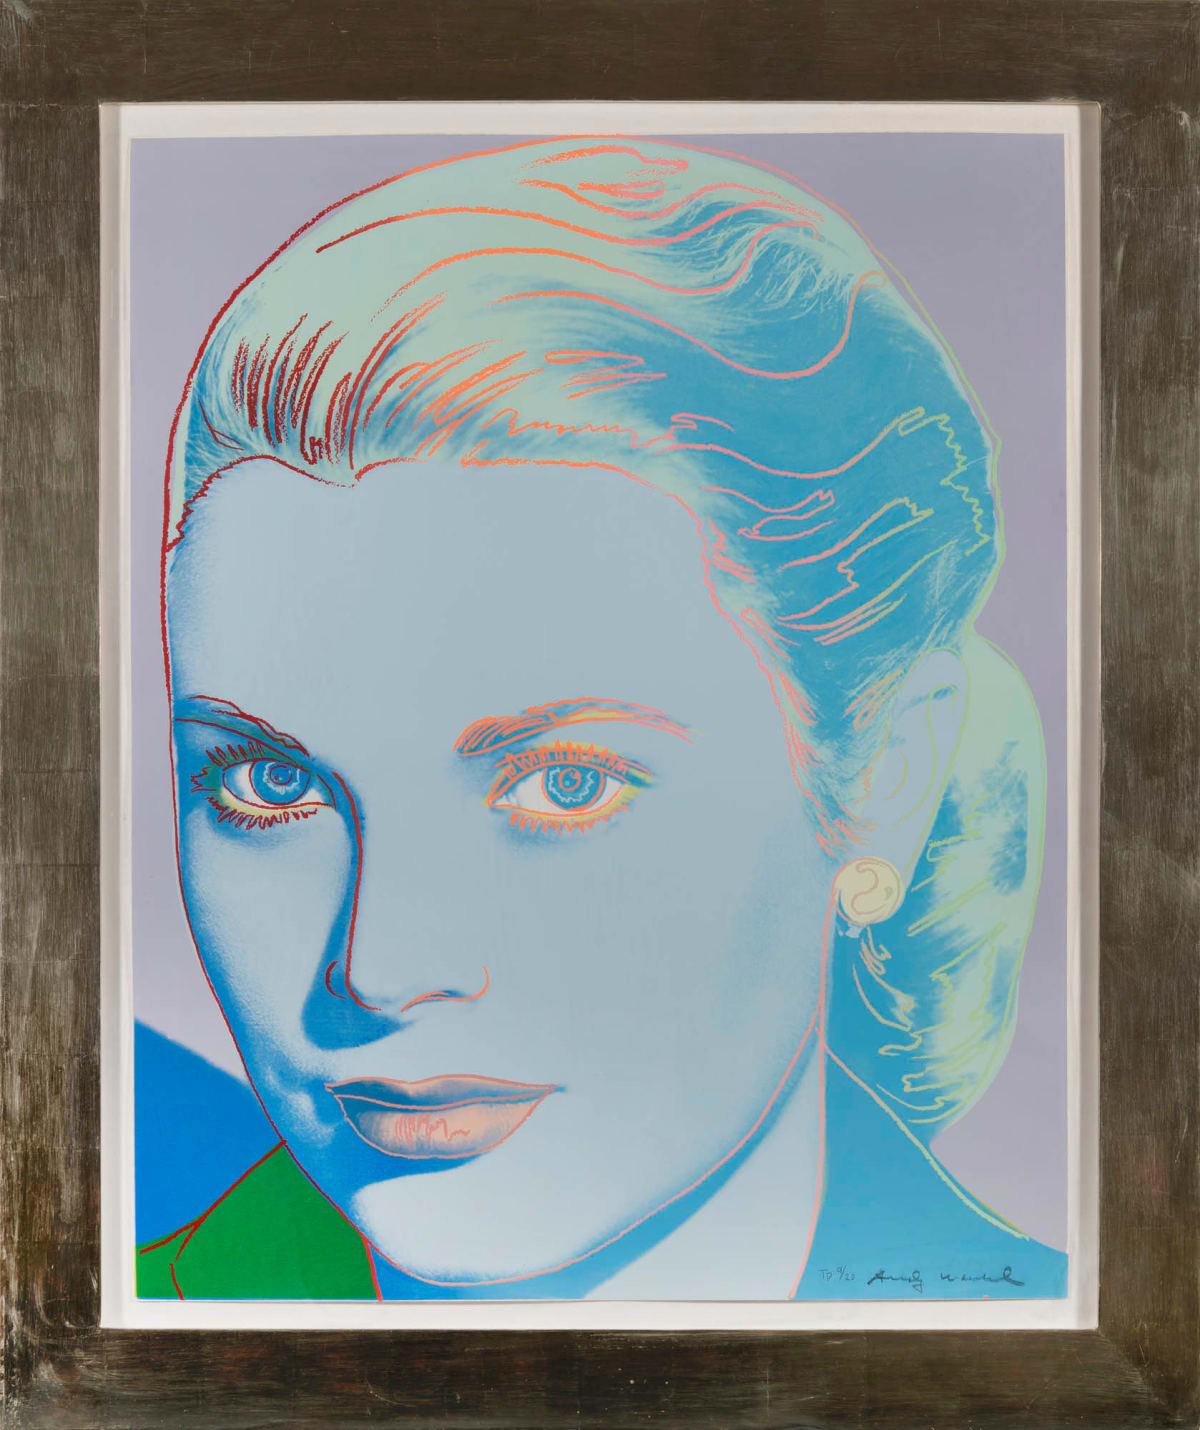 Andy Warhol, Grace Kelly (F&S IIB.305), 1984